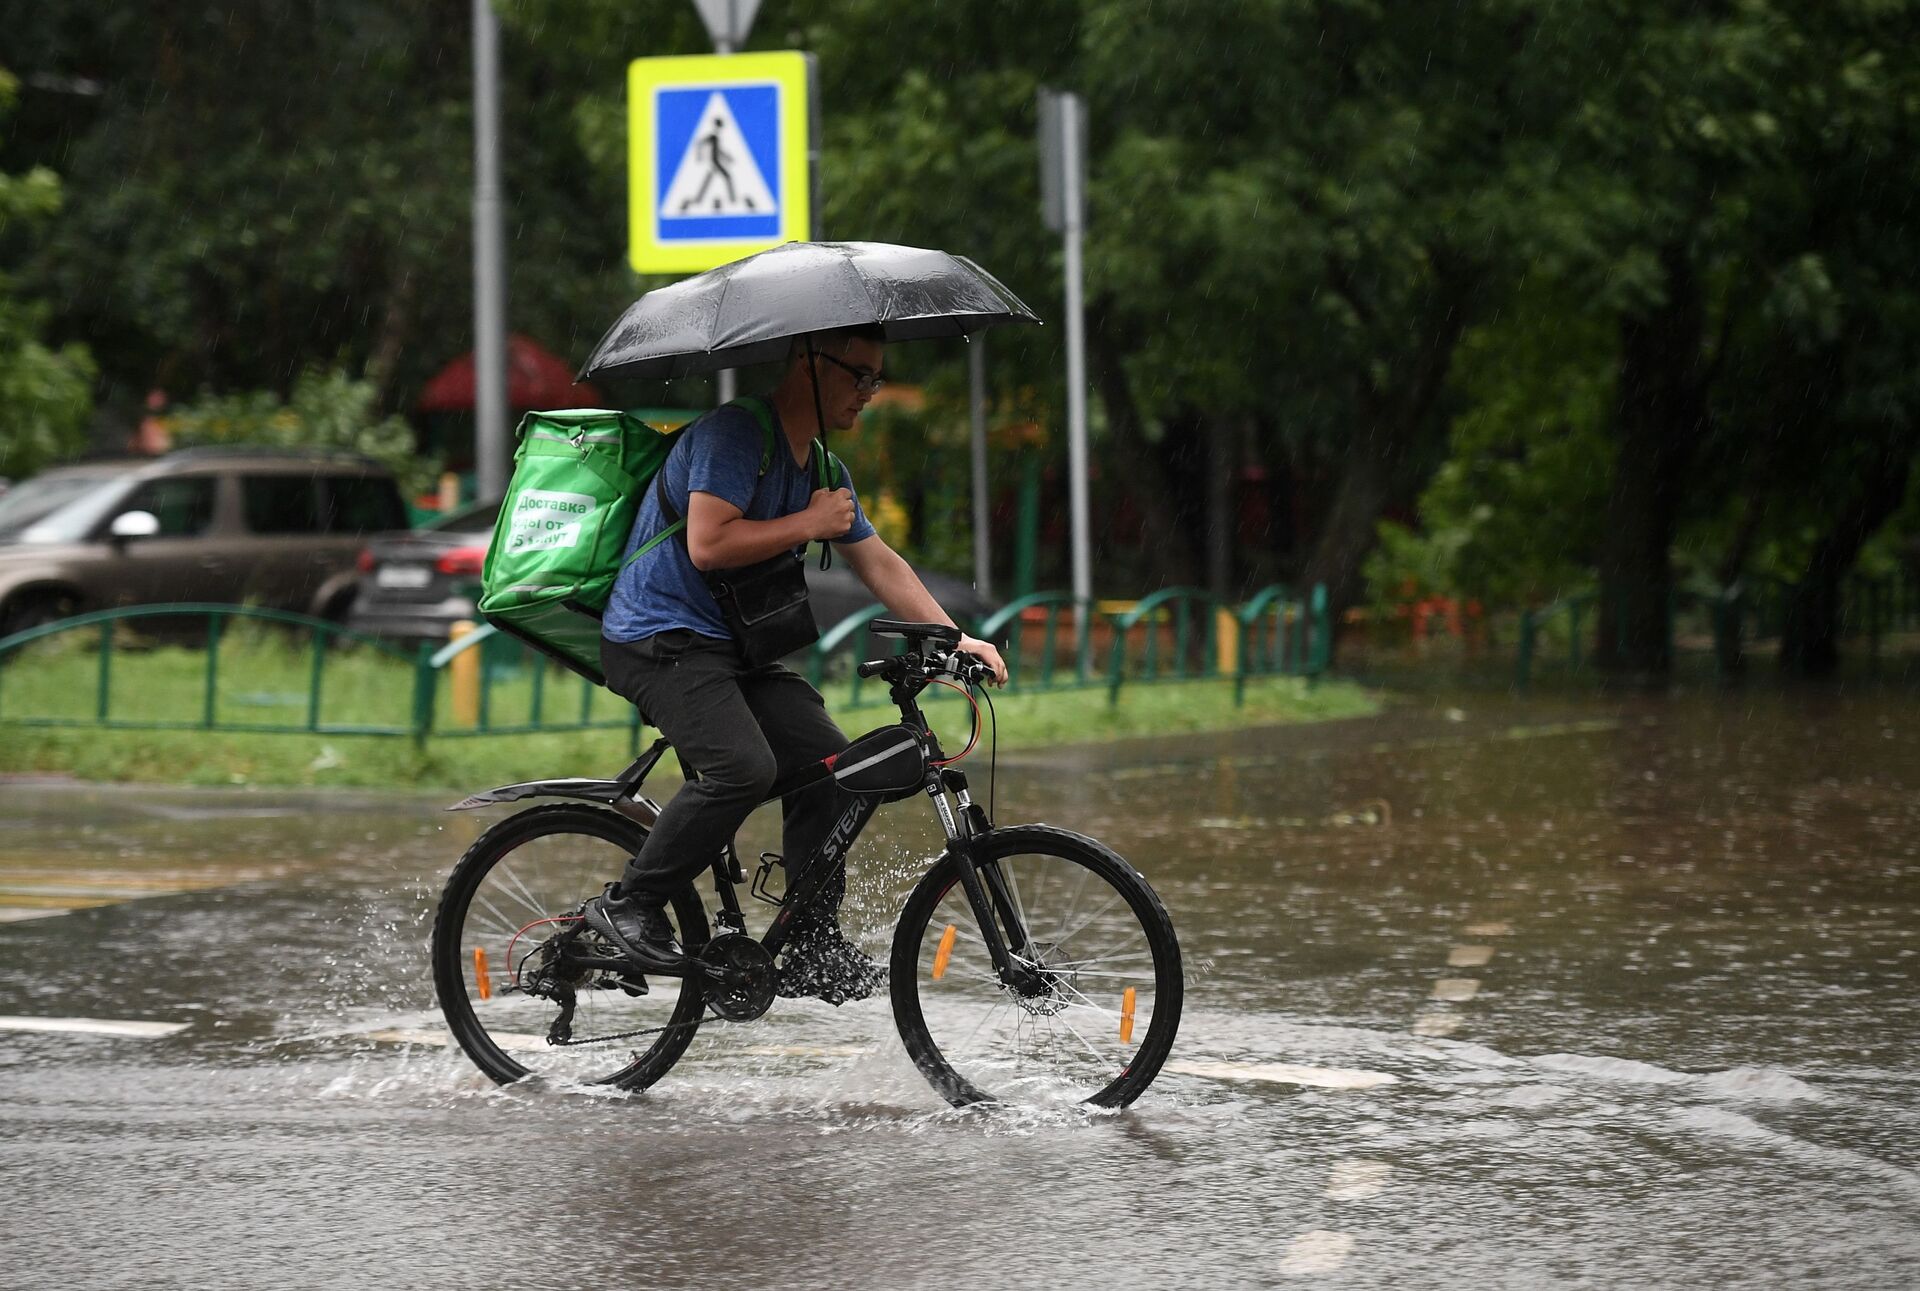 Дождь без перерыва. Велосипед дождь. Курьер на велосипеде в дождь. Велосипедист под дождем. Велосипед ливень.